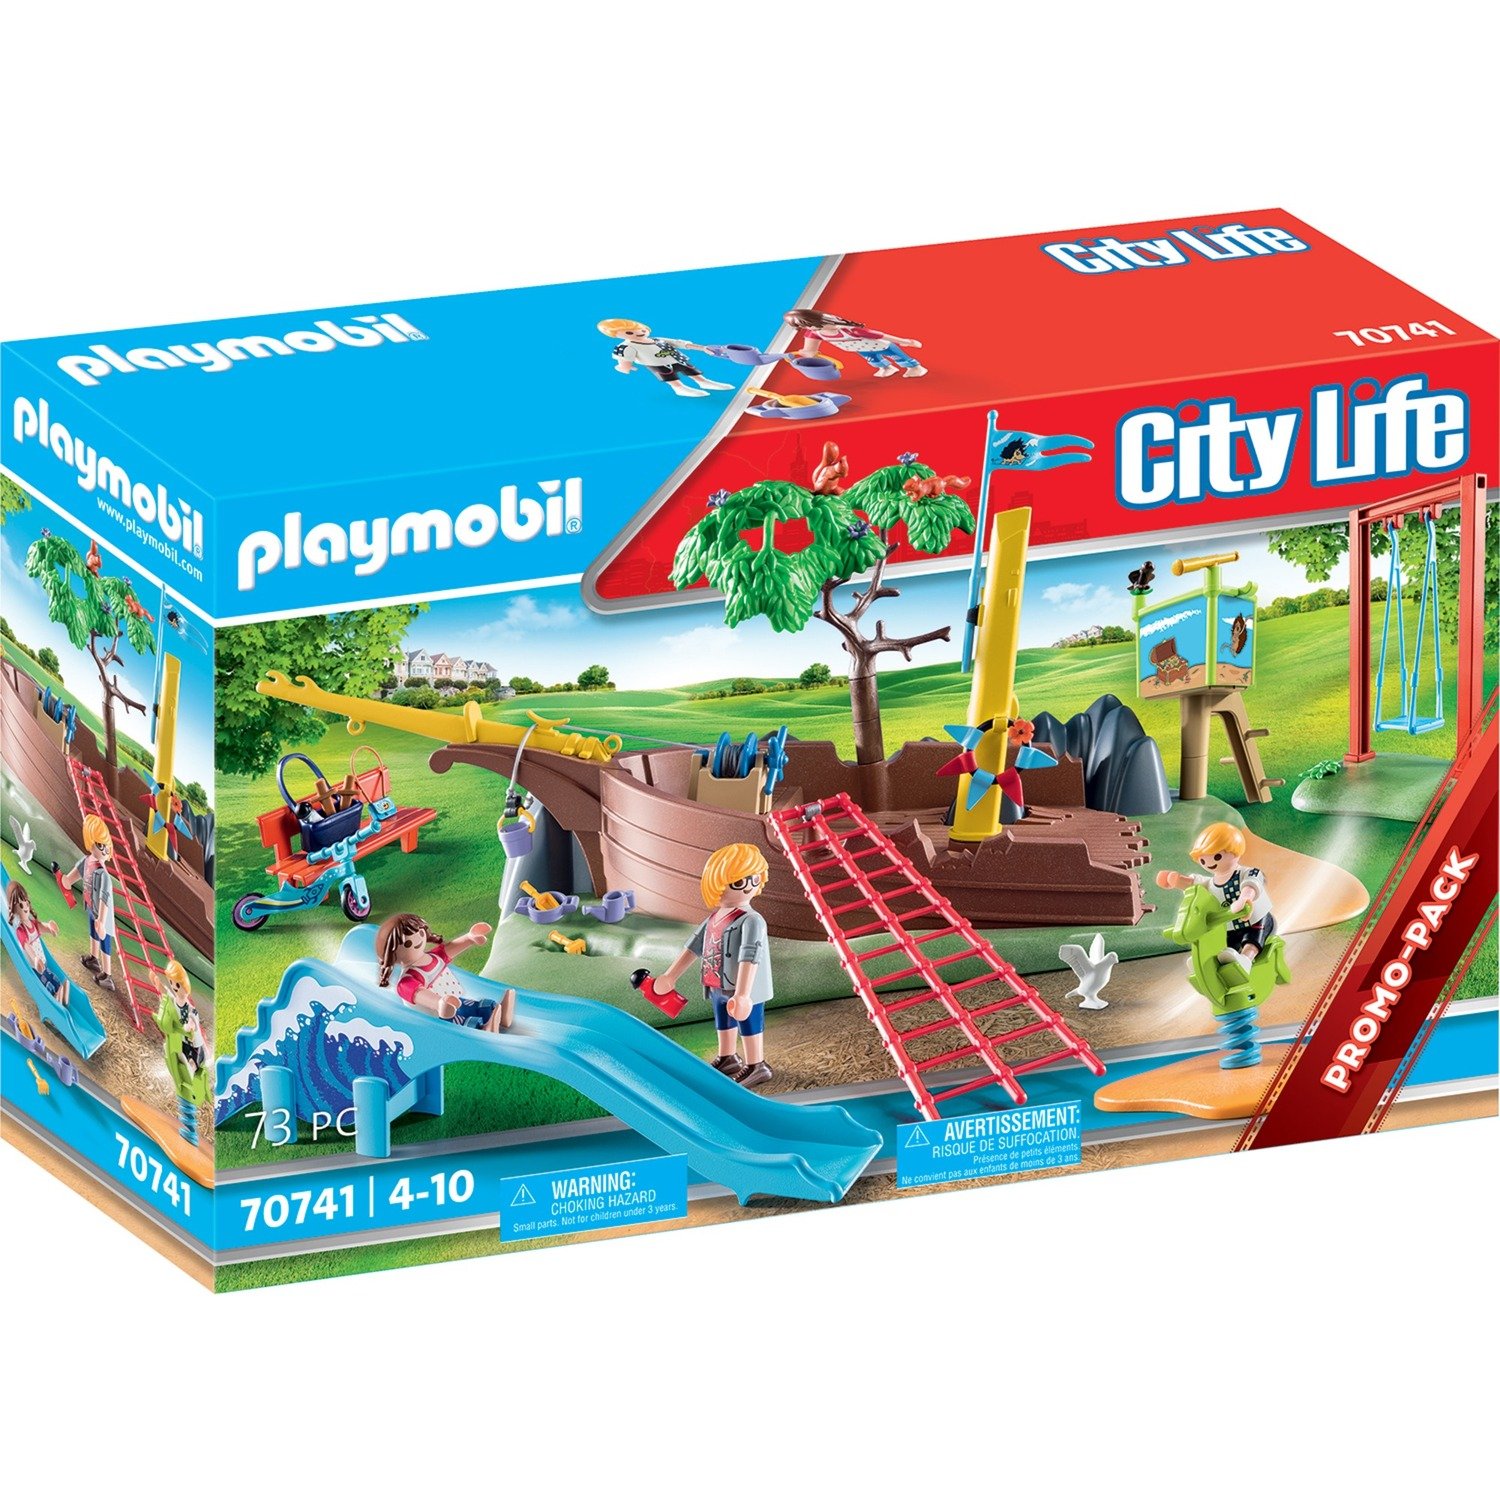 PLAYMOBIL City Life 70741 Abenteuerspielplatz mit Schiffswrack, Ab 4 Jahren